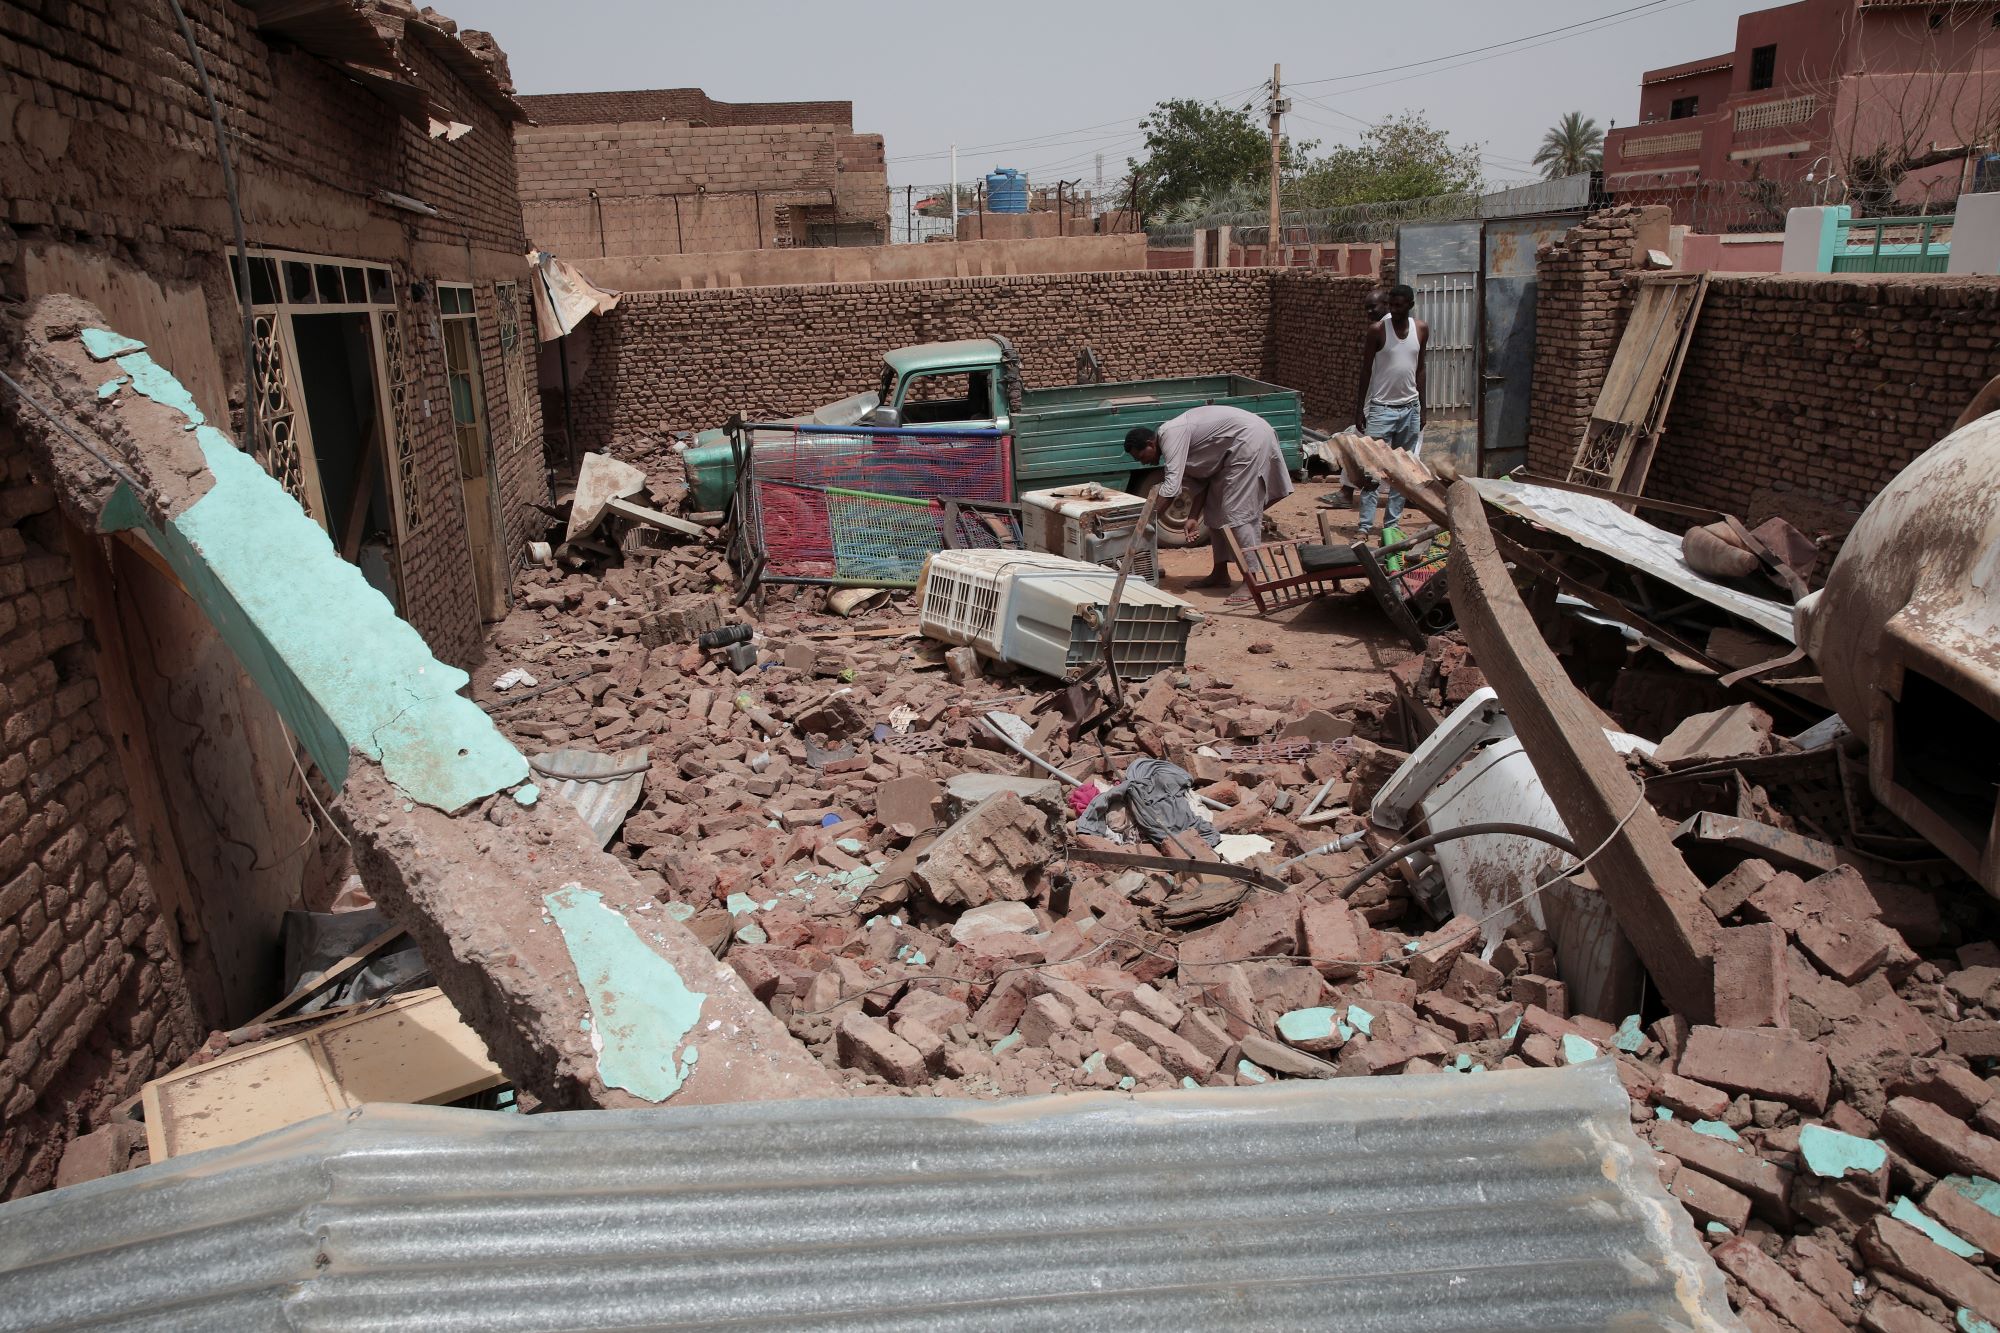 ΟΗΕ: Εγκλήματα κατά της ανθρωπότητας οι βιαιότητες στο Νταρφούρ του Σουδάν